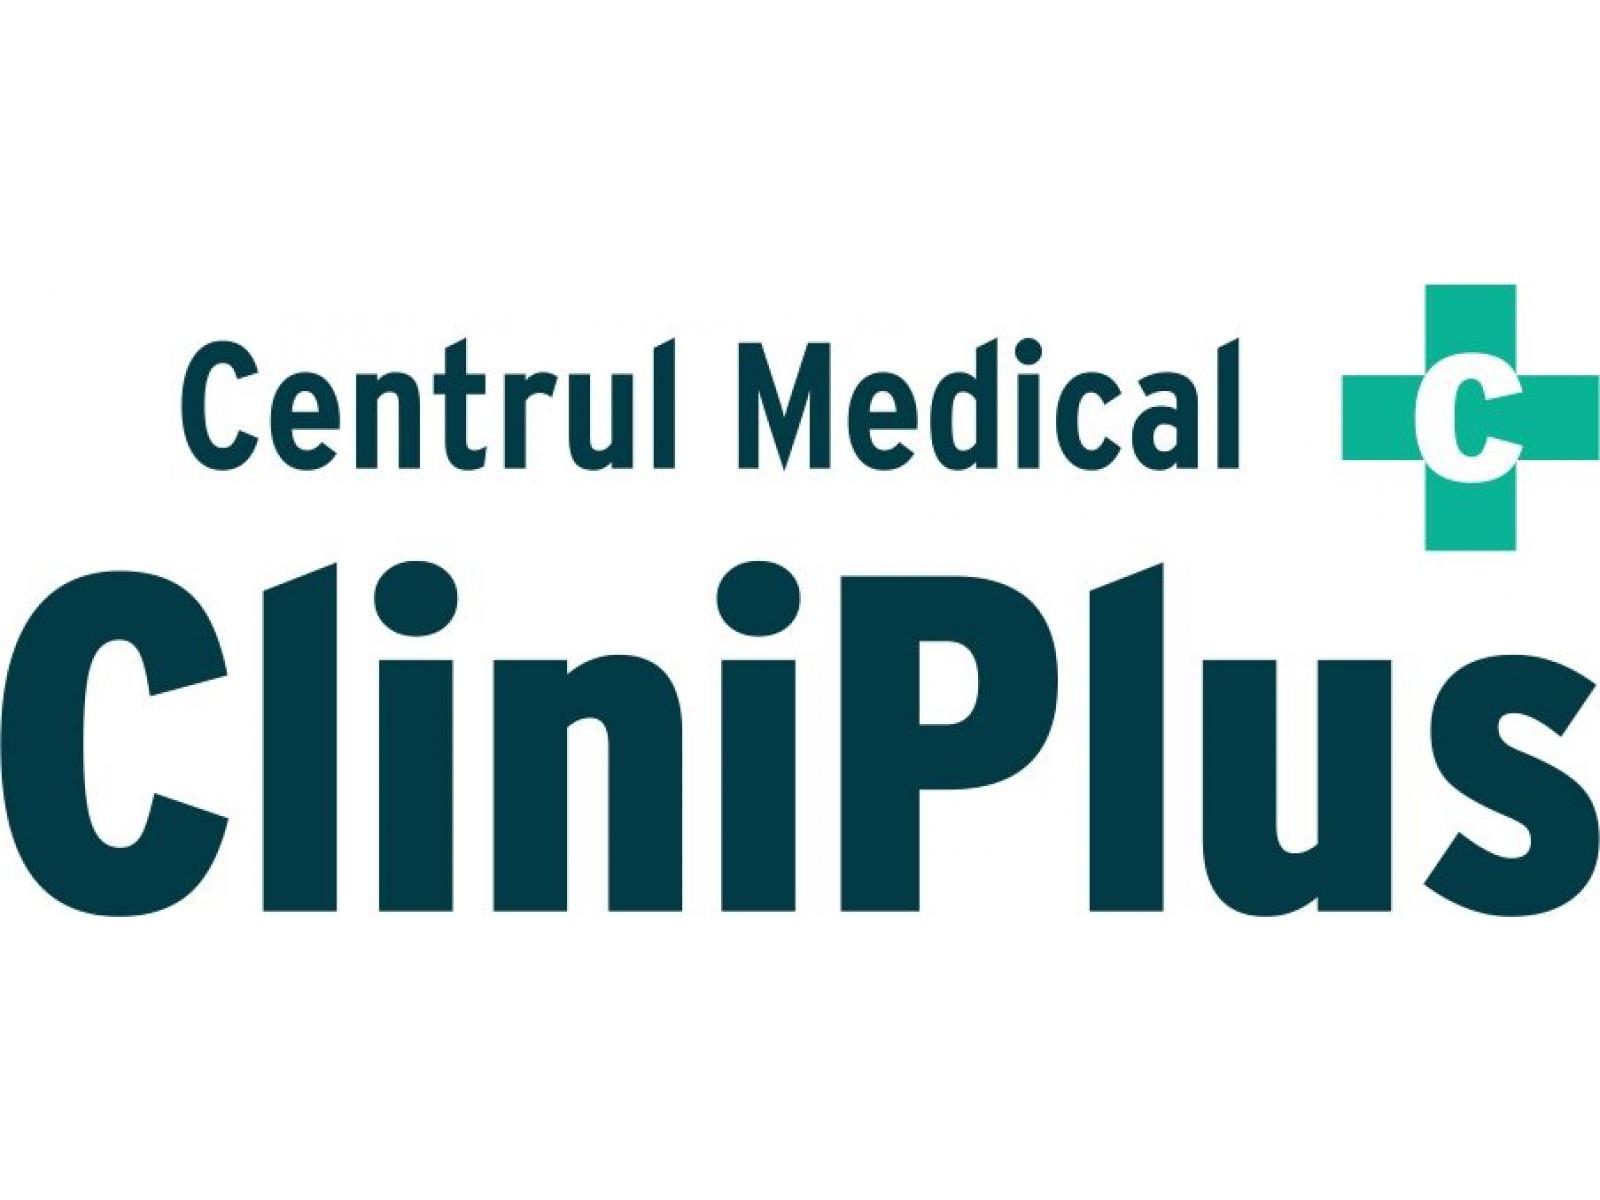 Centrul Medical Cliniplus - sigla.jpg